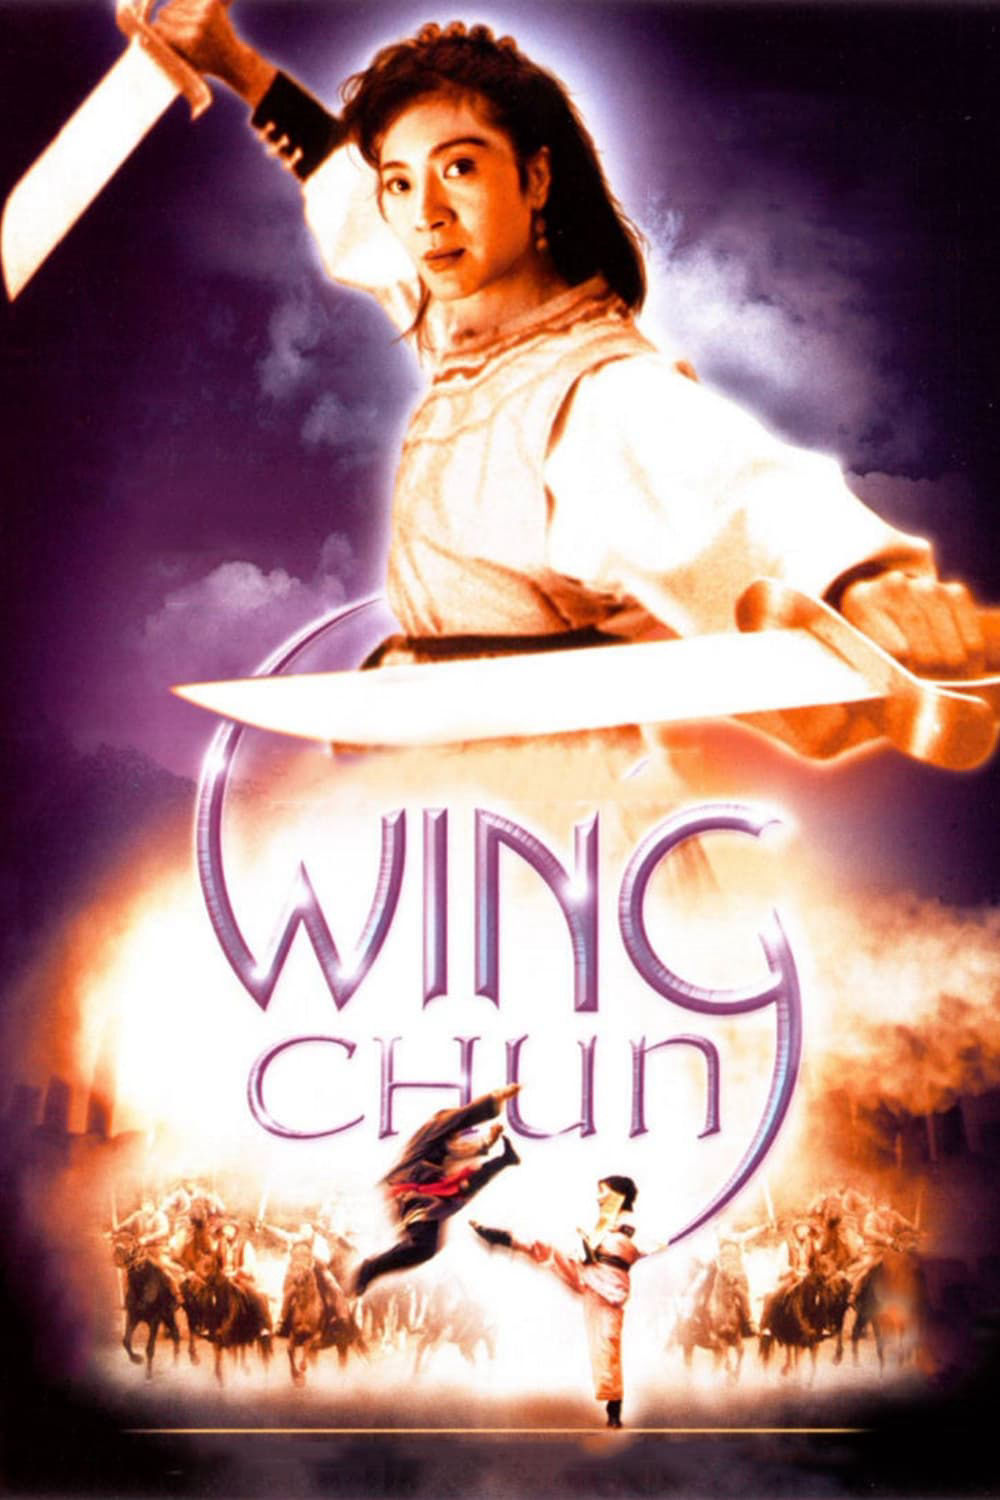 Xem Phim Vịnh Xuân Quyền (Wing Chun)